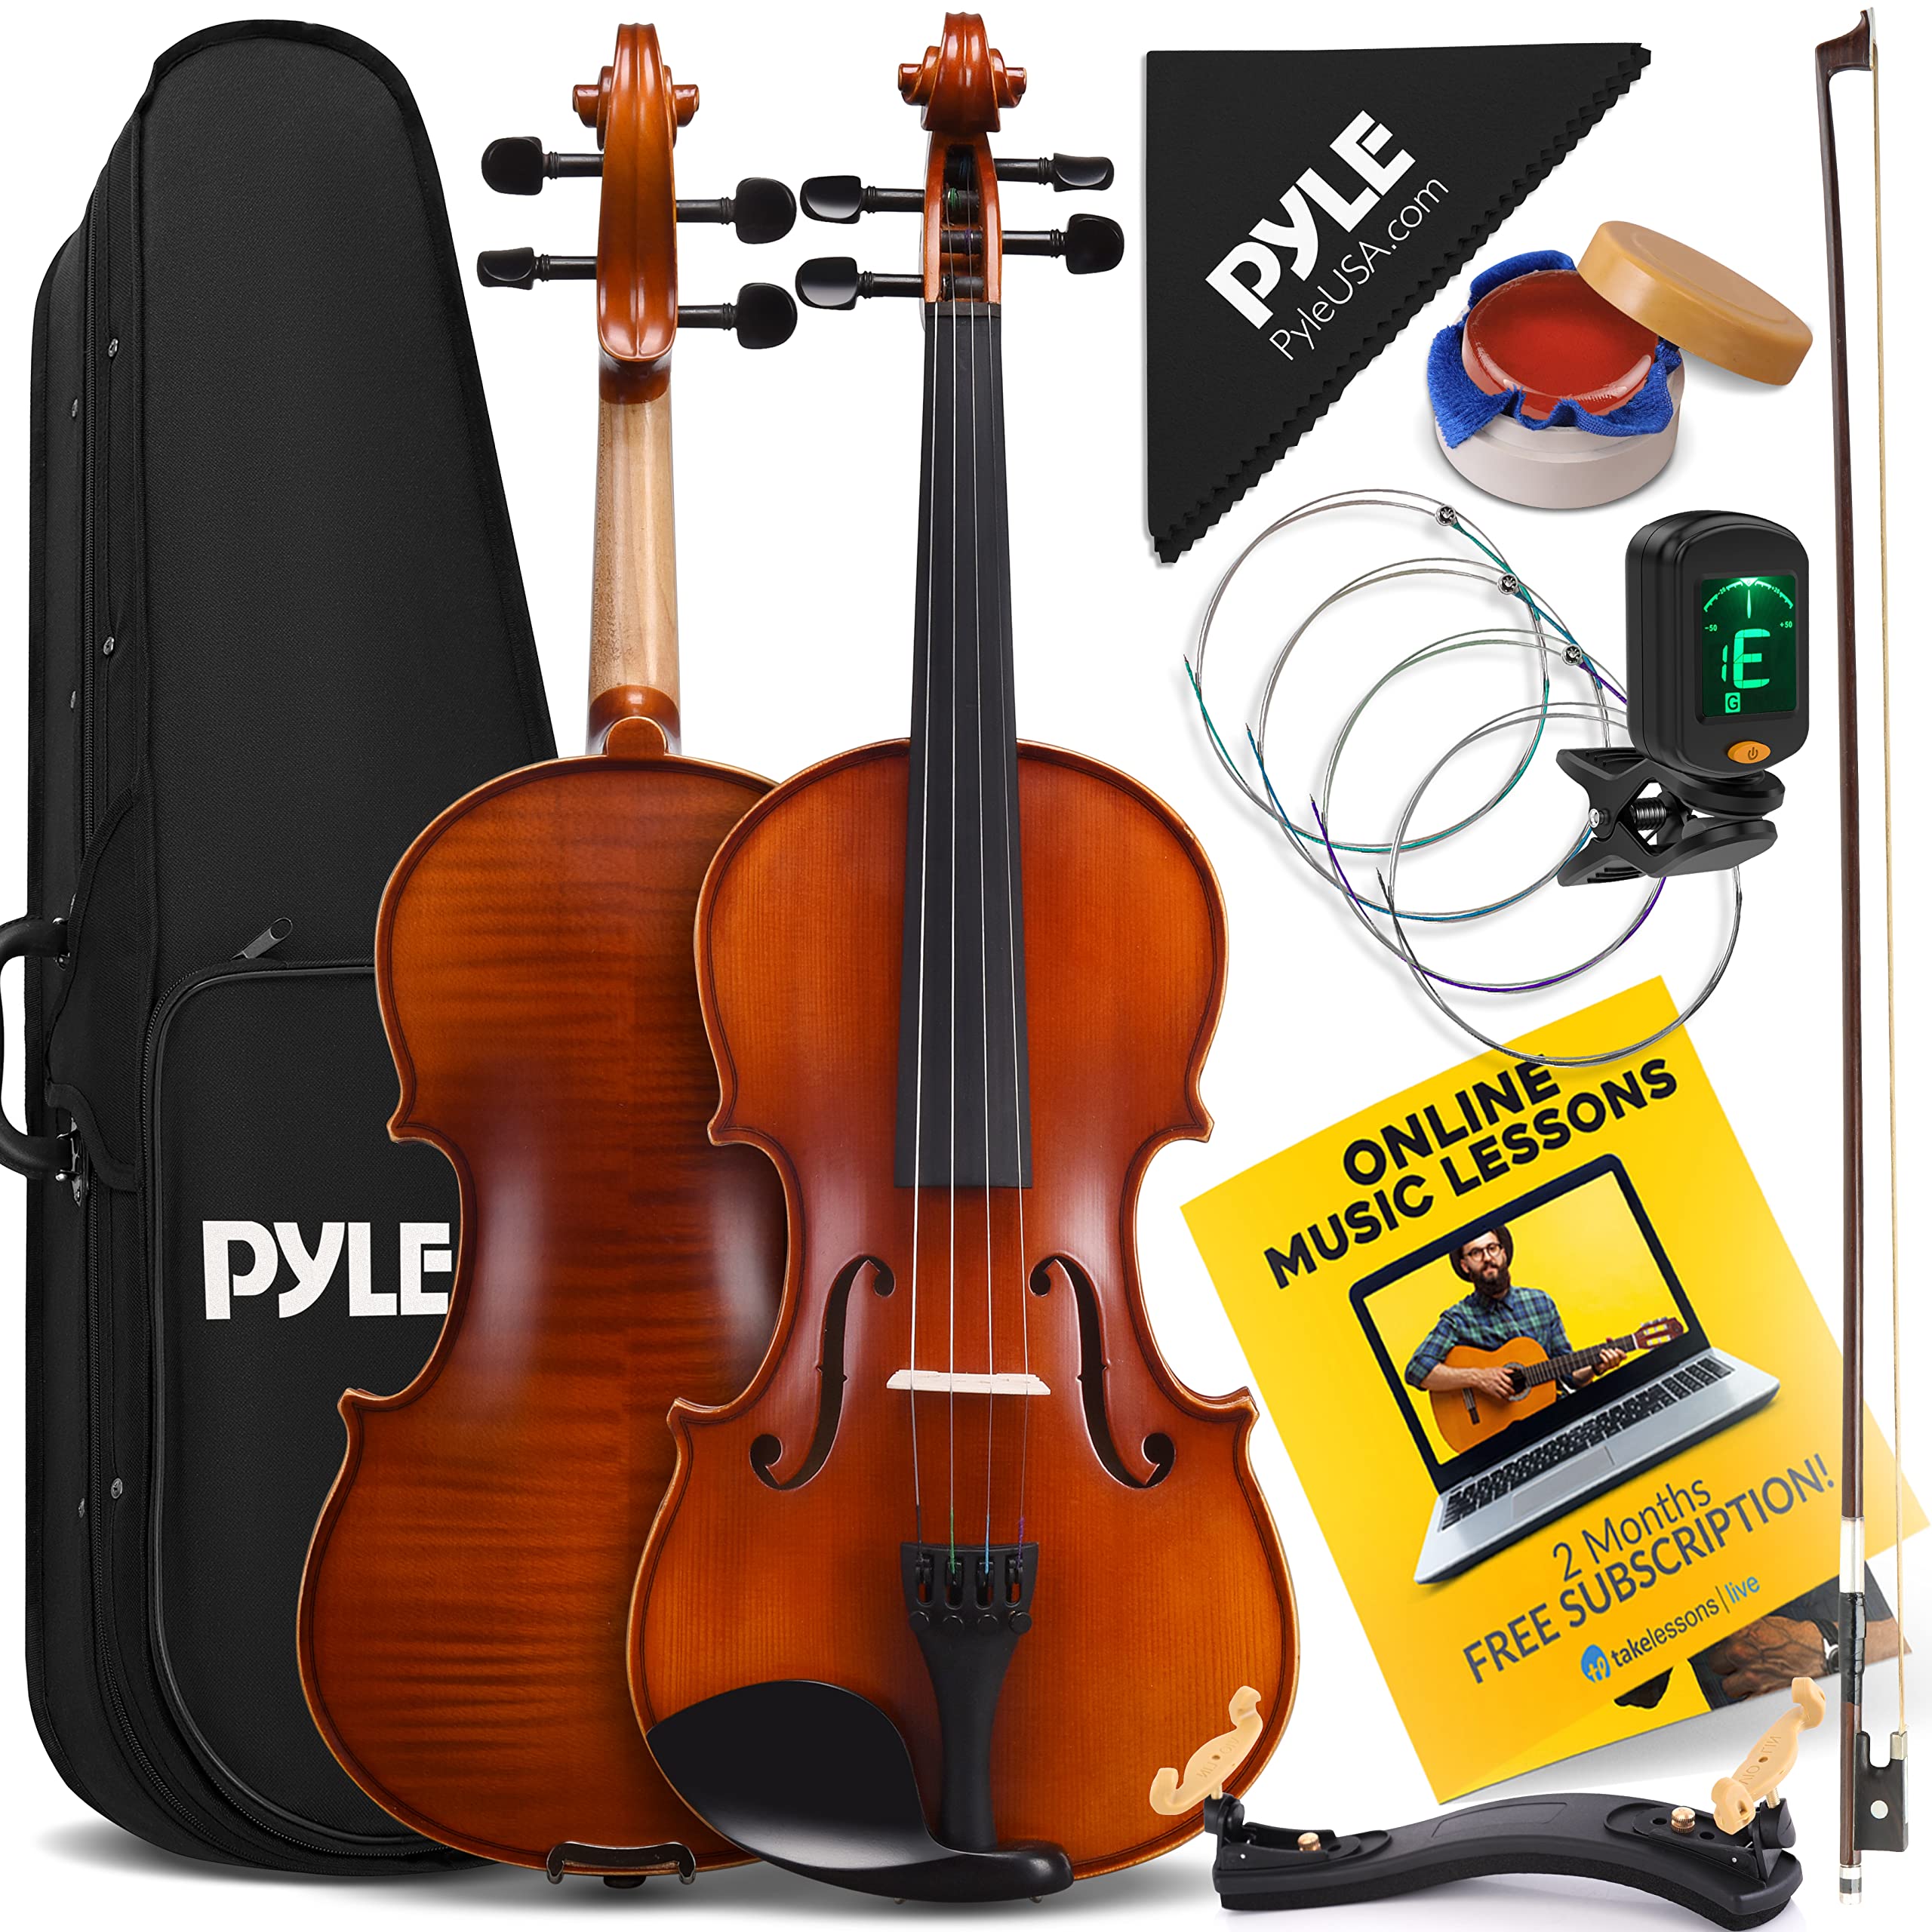 PyleUSA 优质实木小提琴全尺寸 4/4 原声小提琴套装管弦乐器套件，在线课程，硬盒，琴弓，调音器，4 名学生初学者到高级成人，(PGVILN100)